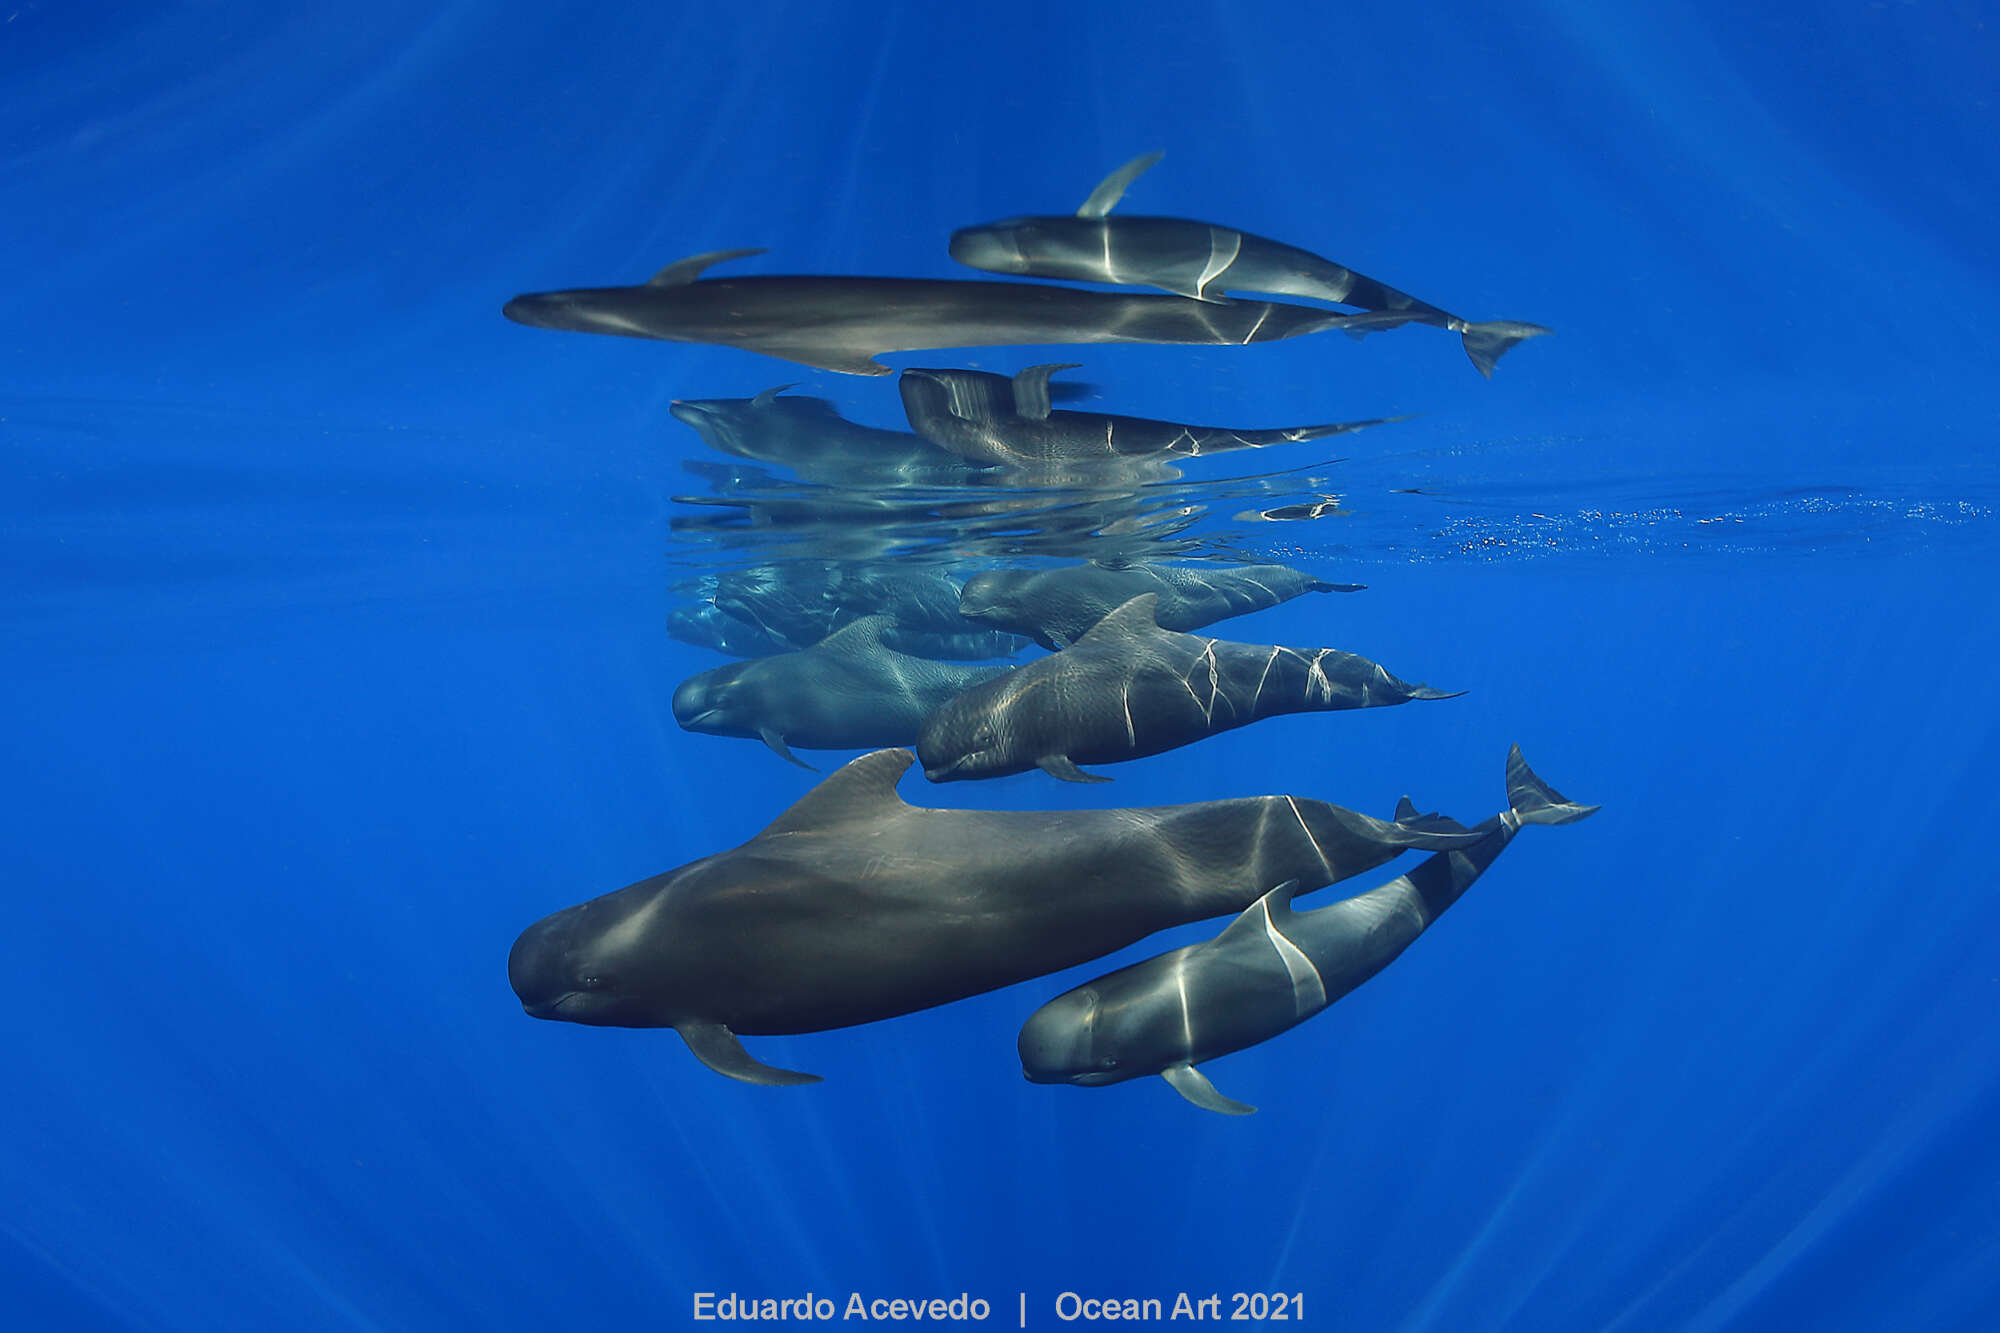 Πρώτη θέση στην κατηγορία «Ευρυγώνια λήψη» η φωτογραφία μιας ομάδας ενός ωκεάνιου είδους δελφινιών που ονομάζεται «μαυροδέλφινο» αν και συχνά αναφέρεται λανθασμένα σαν «φάλαινα πιλότος». Η ομάδα κολυμπά στη νοτιοδυτική πλευρά της θαλάσσιας οδού ανάμεσα στην Τενερίφης και τη Λα Γκομέρα. Η ομάδα αποτελείται από ενήλικα θηλυκά και τα μικρά τους, καθώς στο συγκεκριμένο είδος αυτό συνηθίζεται τα ενήλικα αρσενικά μιας ομάδας να ζουν σε μια κάποια απόσταση